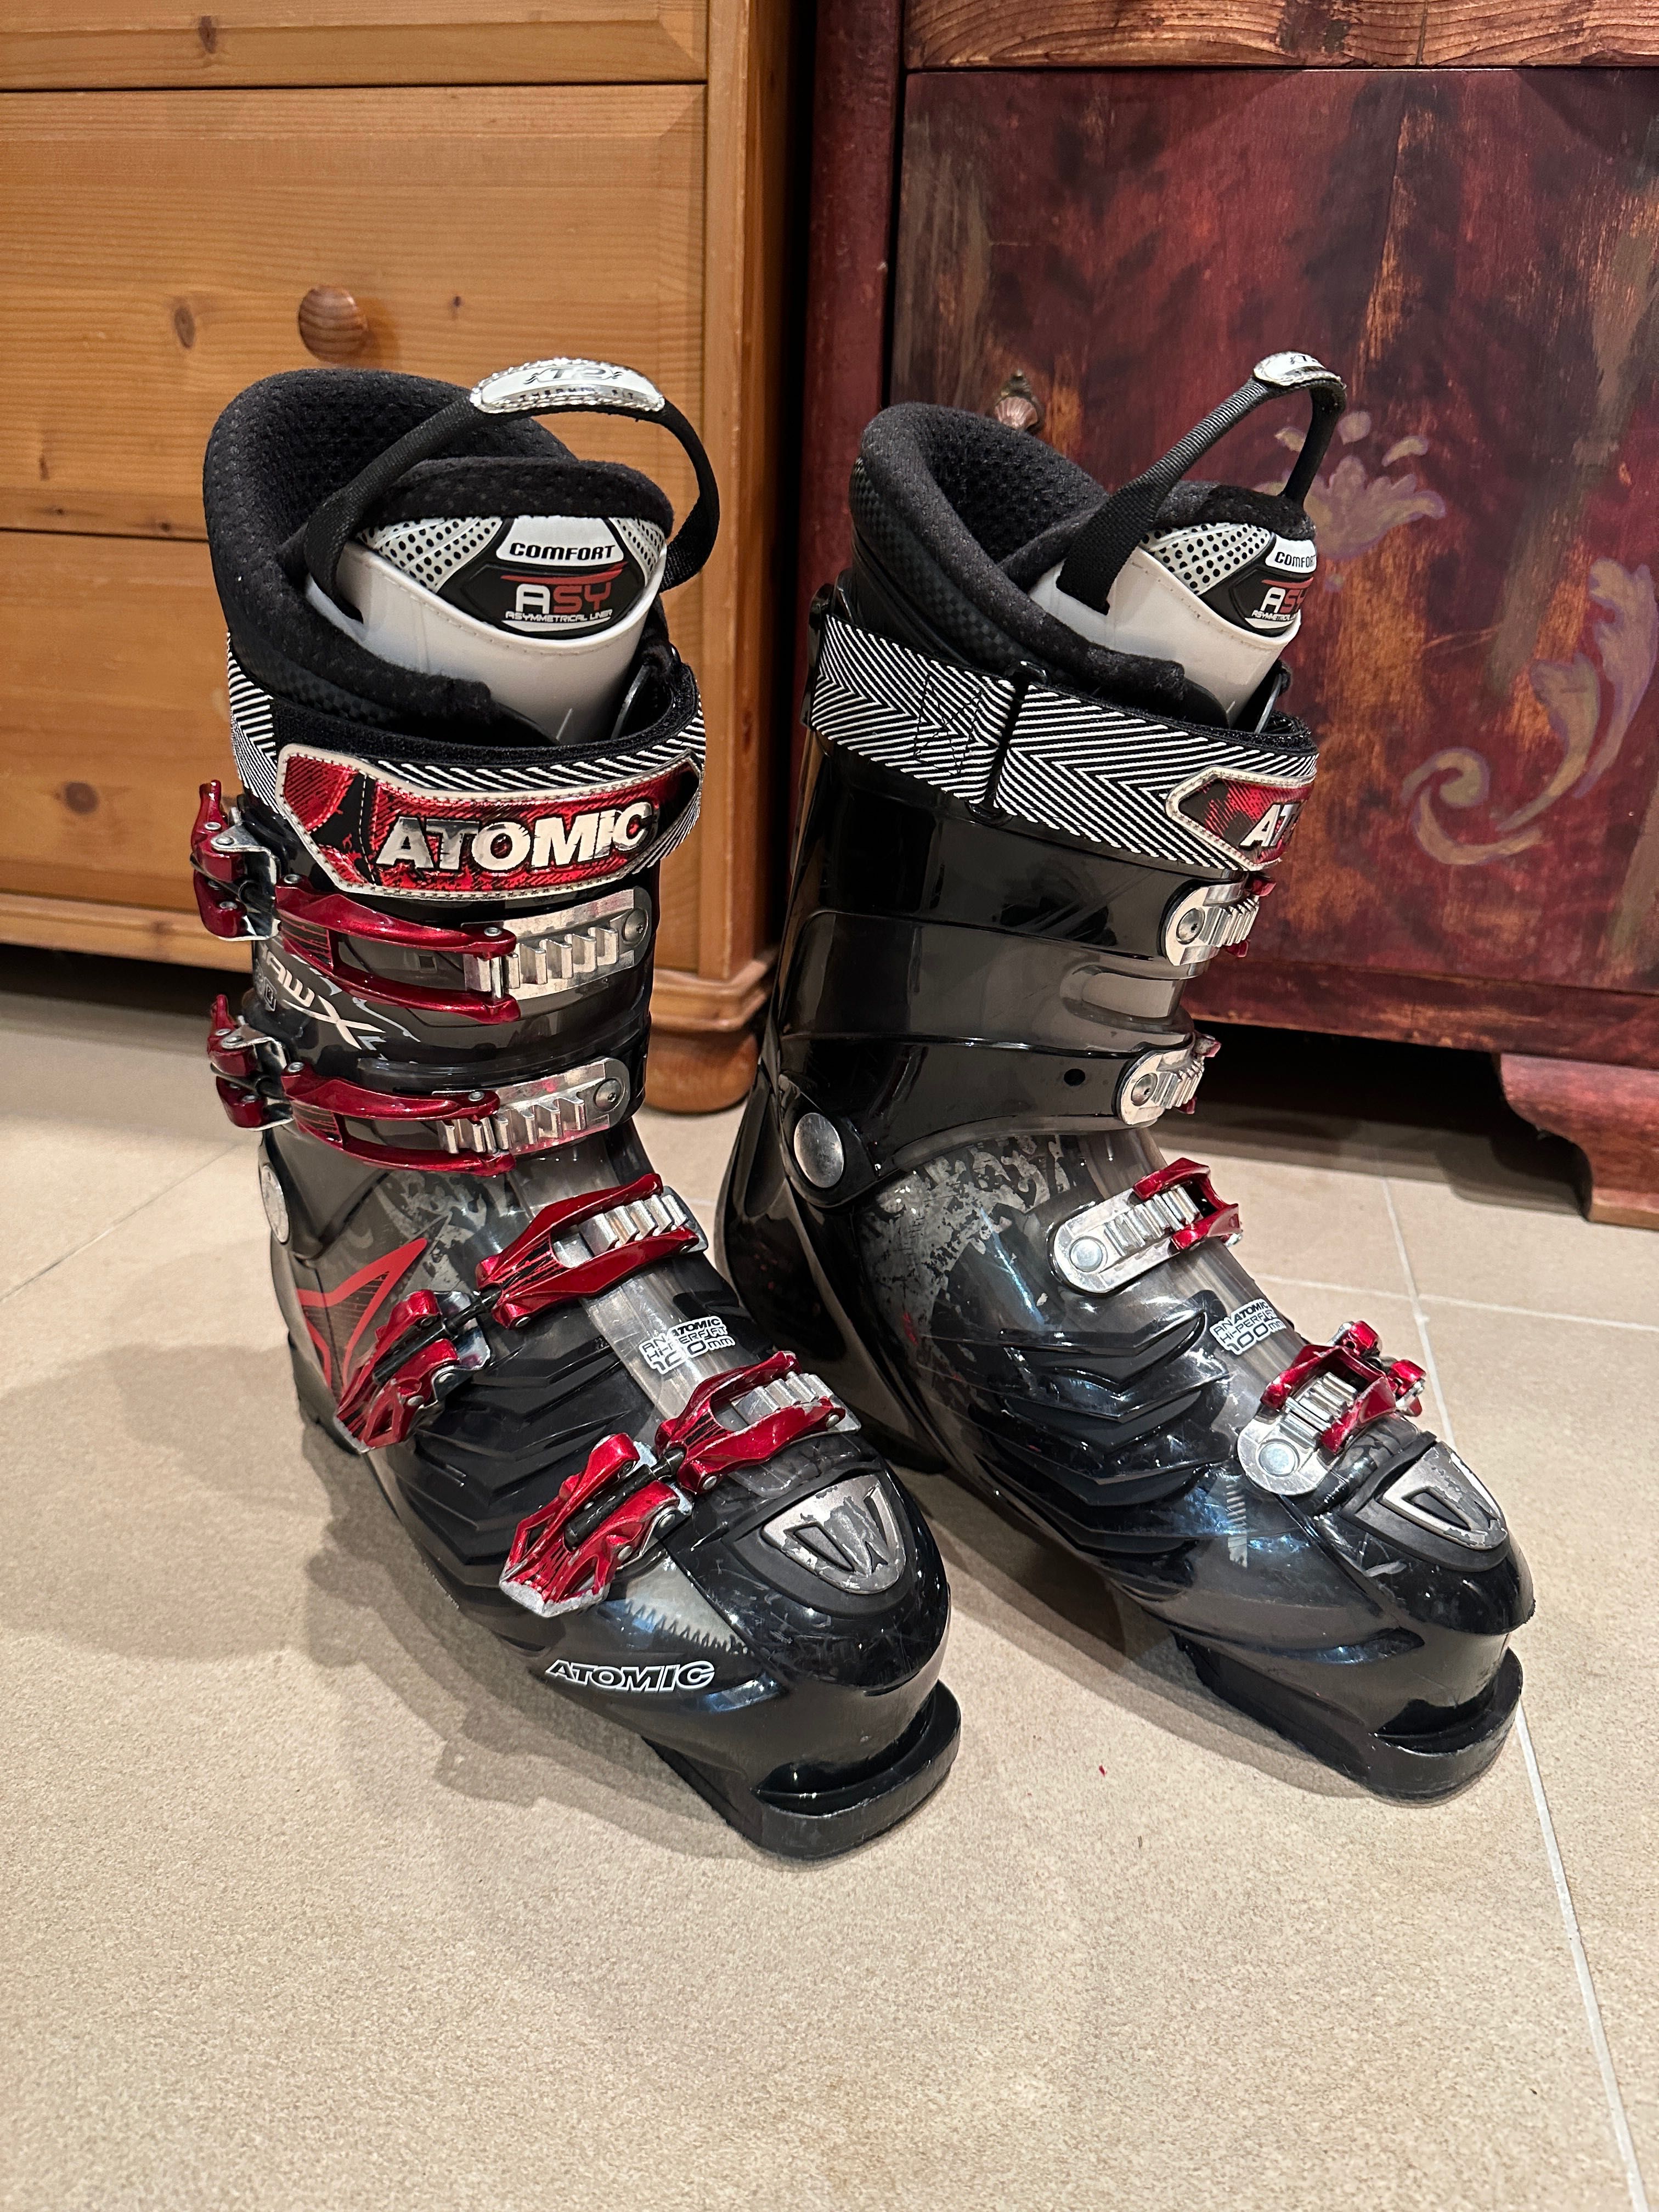 Męskie buty narciarskie Atomic Hawx 80 roz. 44 (28-28.5), Recco